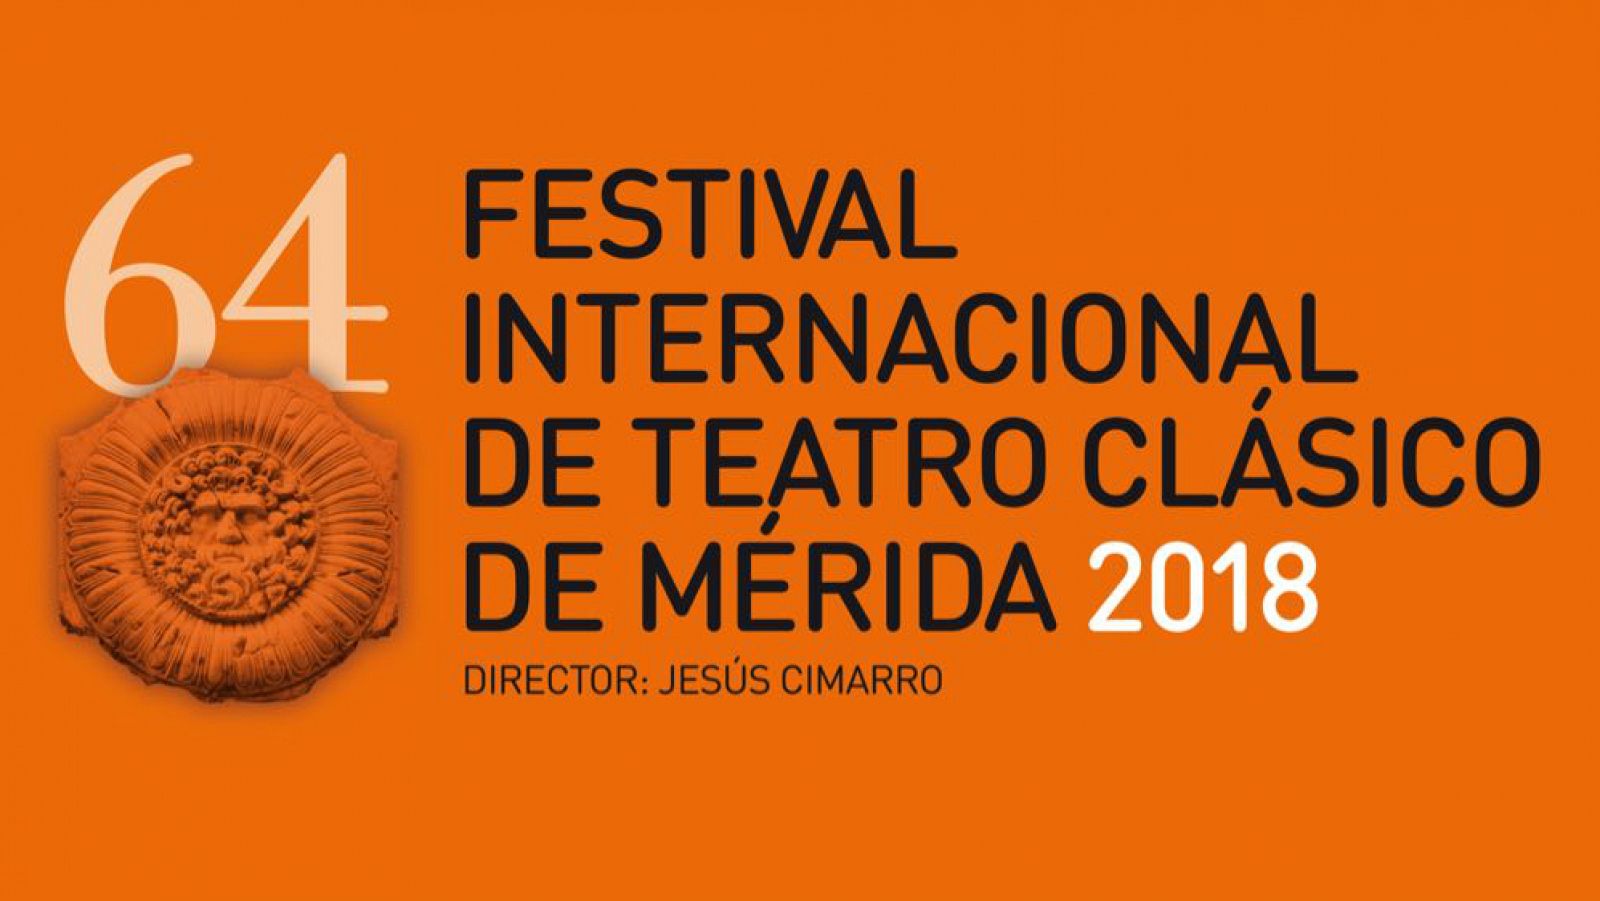 Cartel de la 64ª edición del Festival Internacional de Teatro Clásico de Mérida